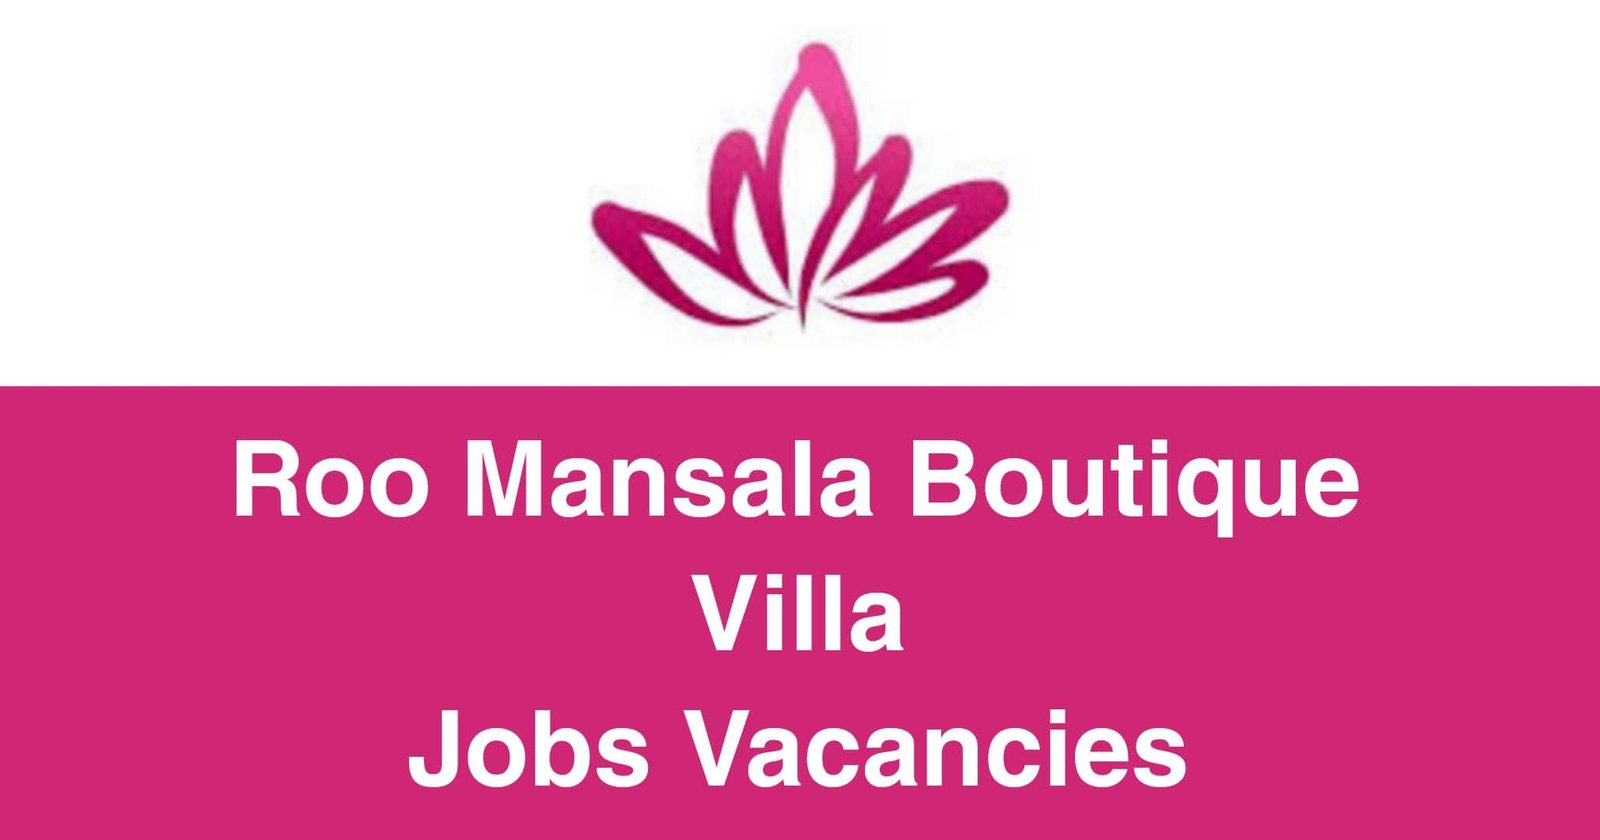 Roo Mansala Boutique Villa Jobs Vacancies